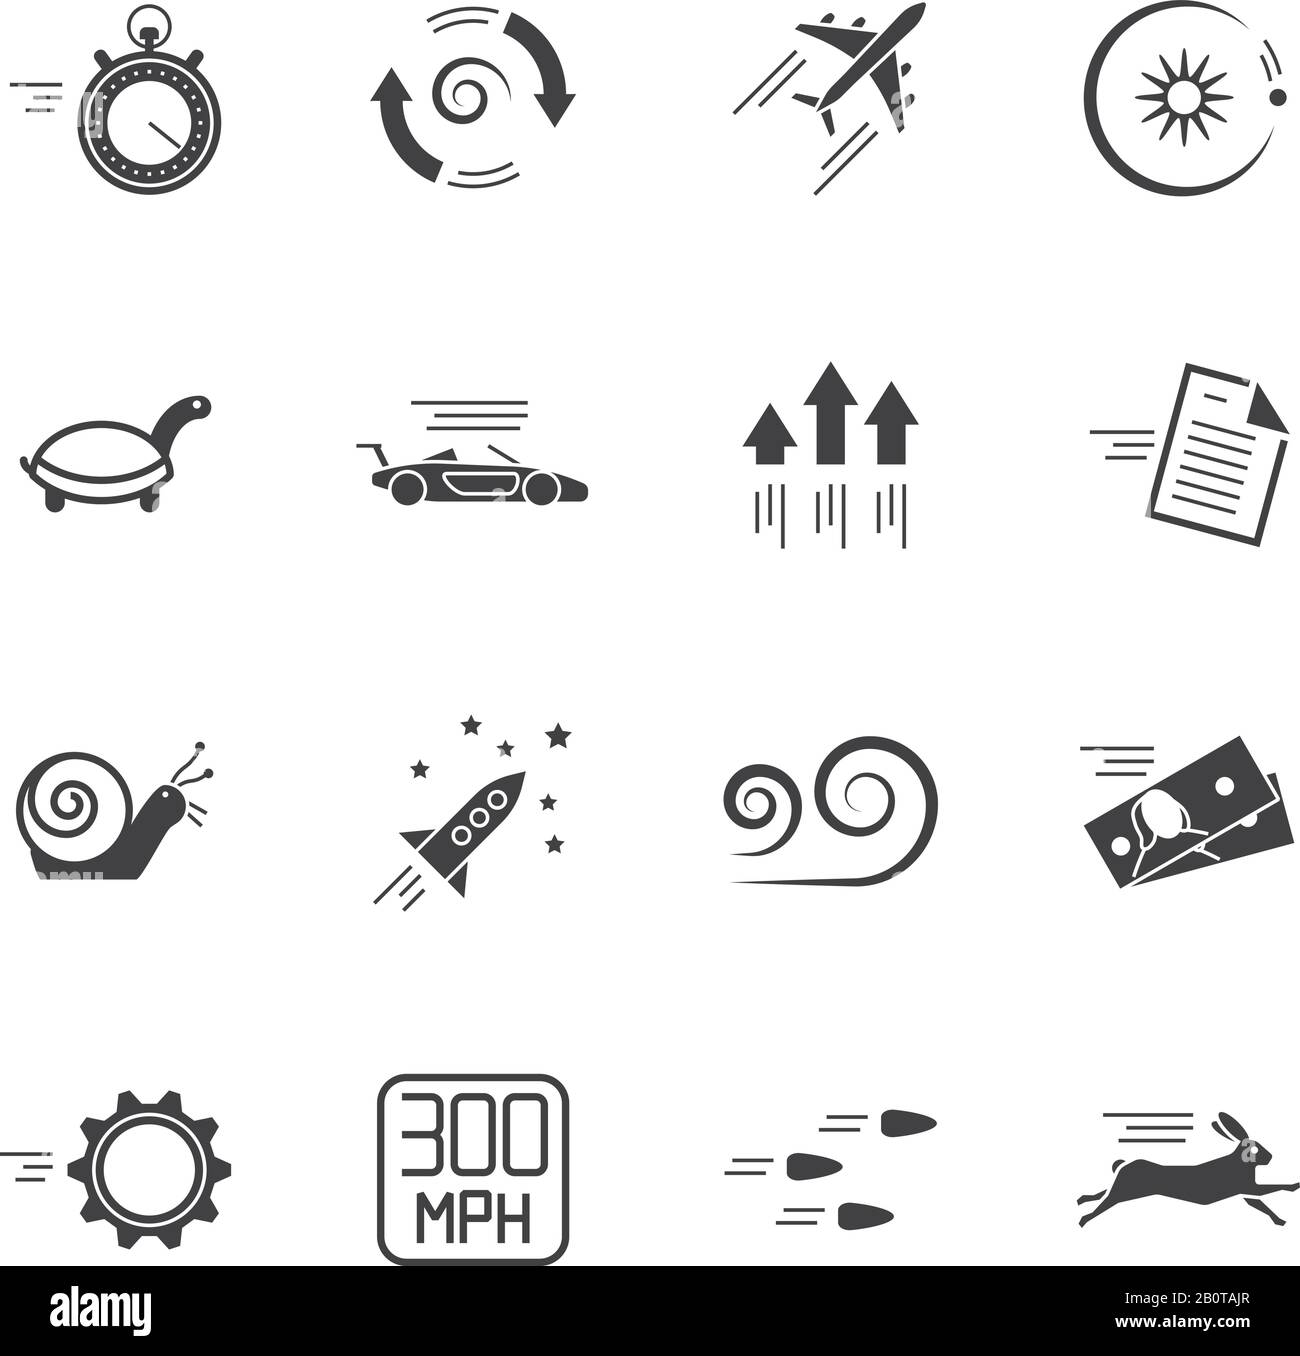 Symbole für Geschwindigkeit, Geschwindigkeit und Performance Vector auf weißem Hintergrund isoliert. Geschwindigkeitsmotorwagen und Abbildung von Geschwindigkeitsrakete, Schnecke und Schildkröte Stock Vektor